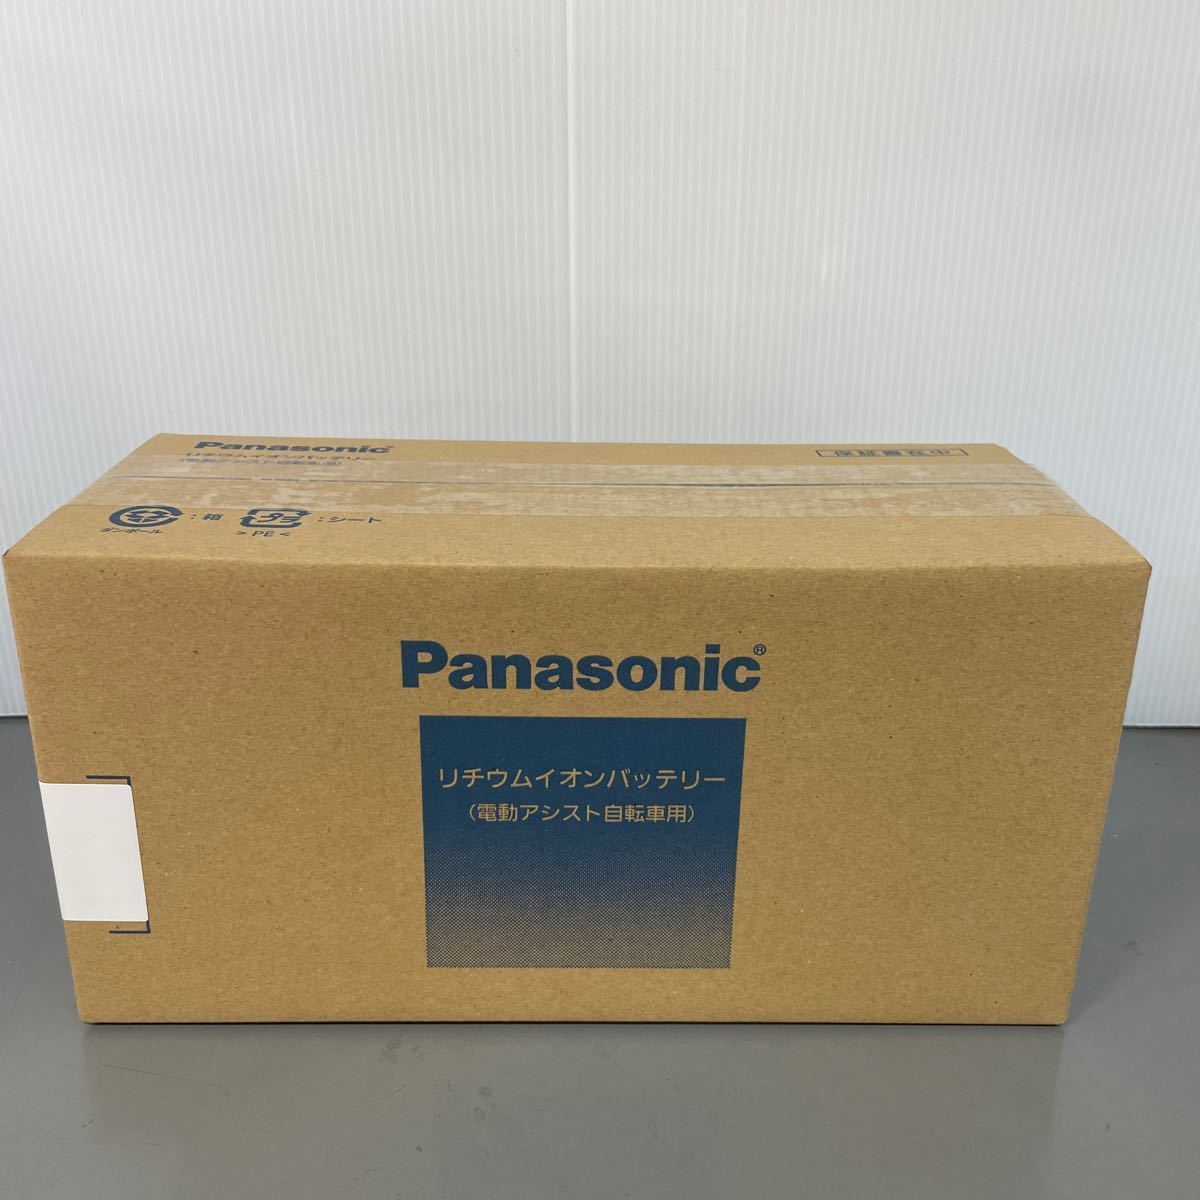 新品未開封 Panasonic パナソニック 電動アシスト自転車用リチウムイオンバッテリー NKY490B02B 6.6Ah_画像1